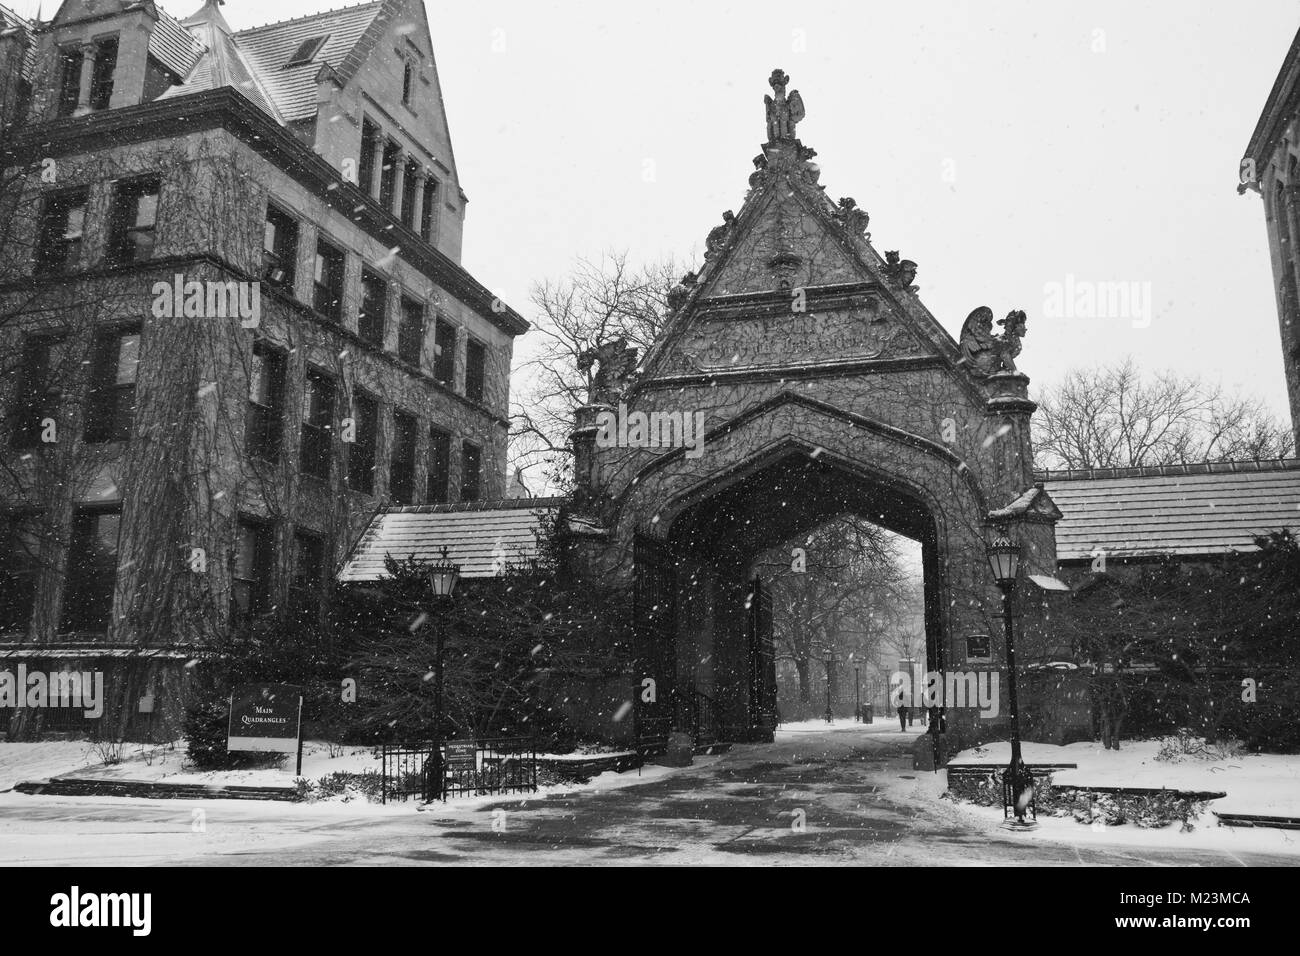 L'iconico Gate Cobb presso l'Università di Chicago conduce in uno dei campus Quads ed è una delle strutture originali presso la scuola. Foto Stock